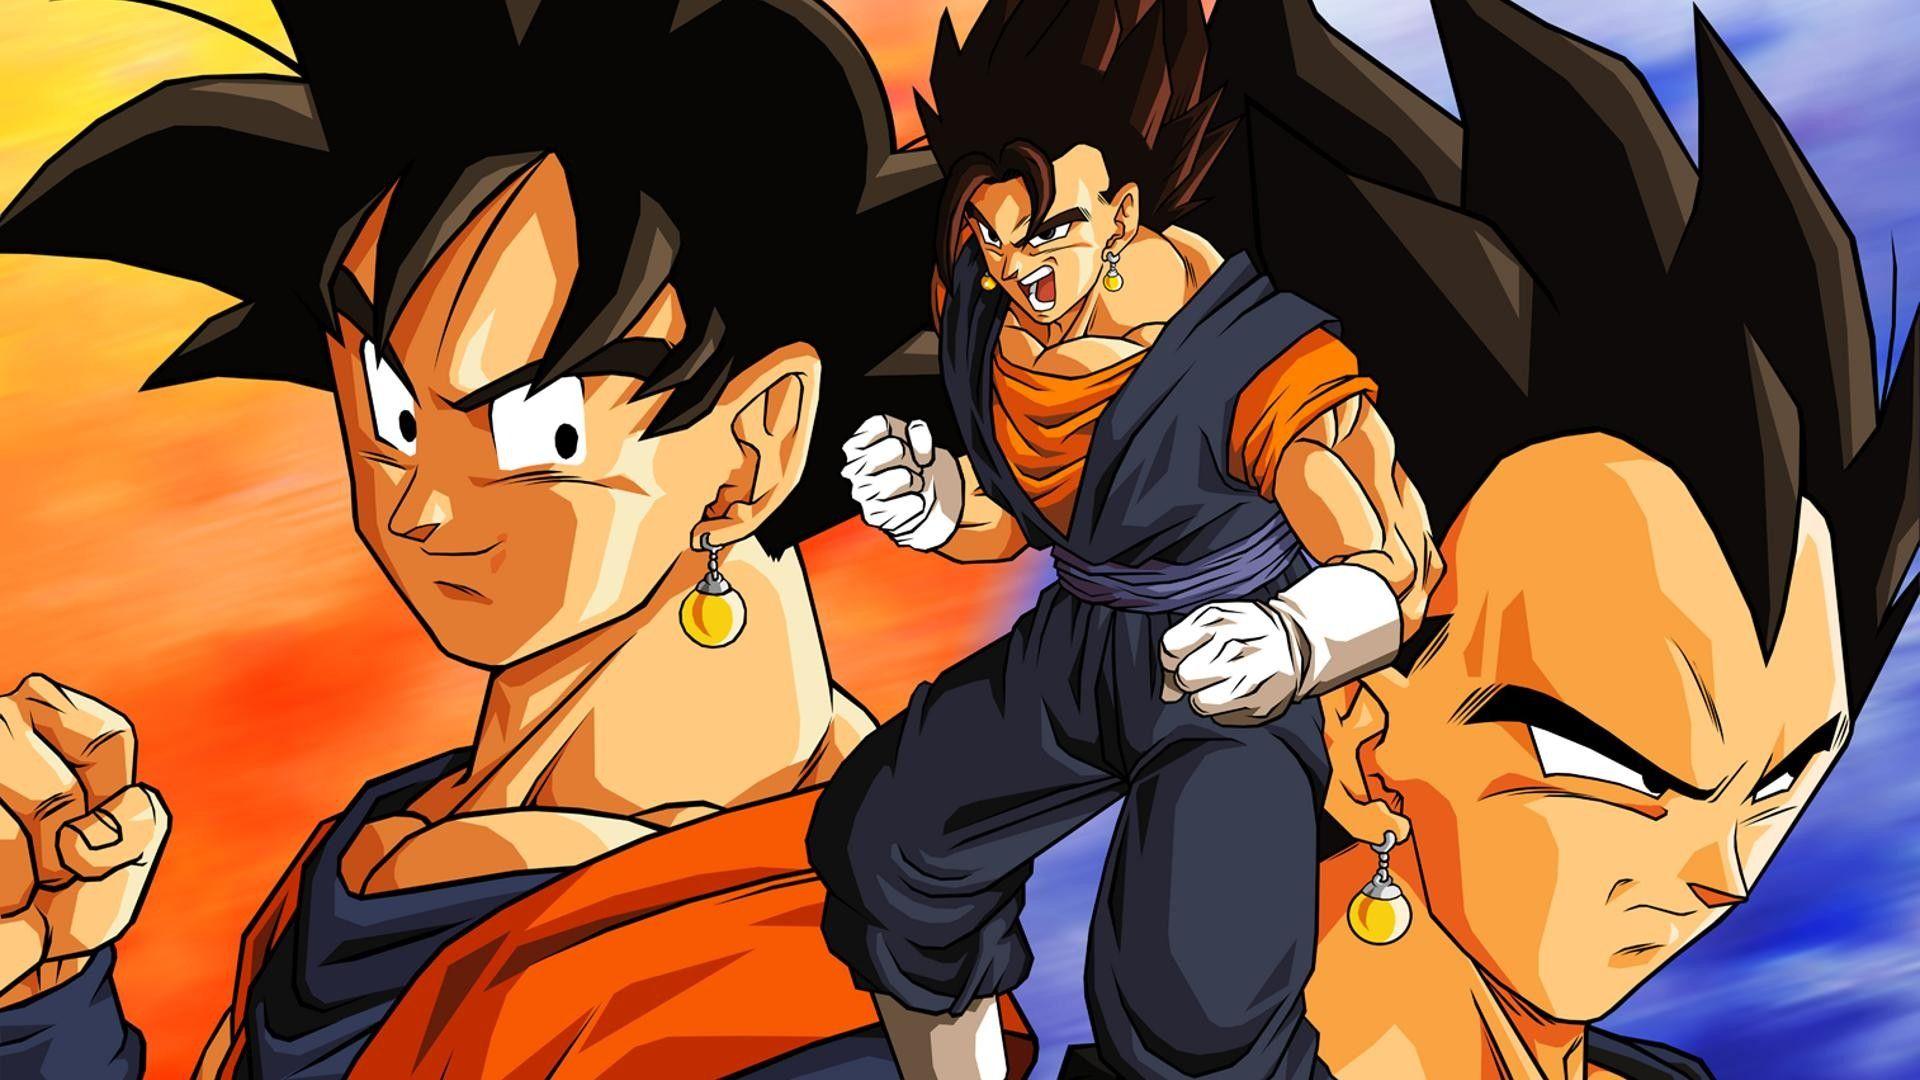 Goku And Vegeta Wallpaper, Goku And Vegeta Background, Goku